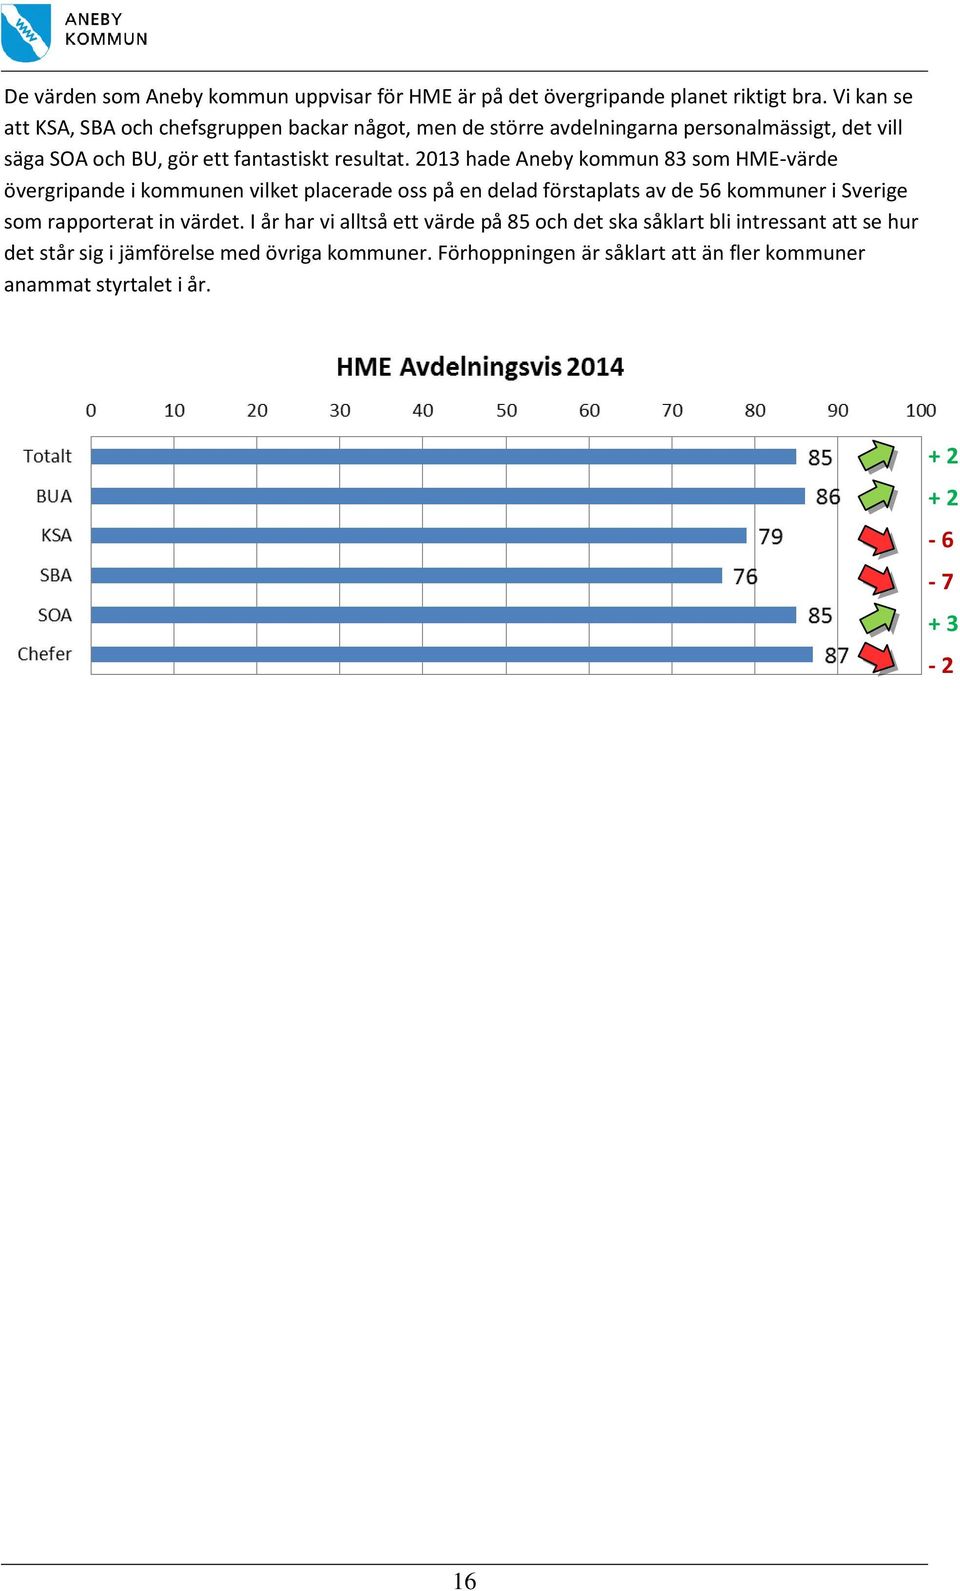 2013 hade Aneby kommun 83 som HME-värde övergripande i kommunen vilket placerade oss på en delad förstaplats av de 56 kommuner i Sverige som rapporterat in